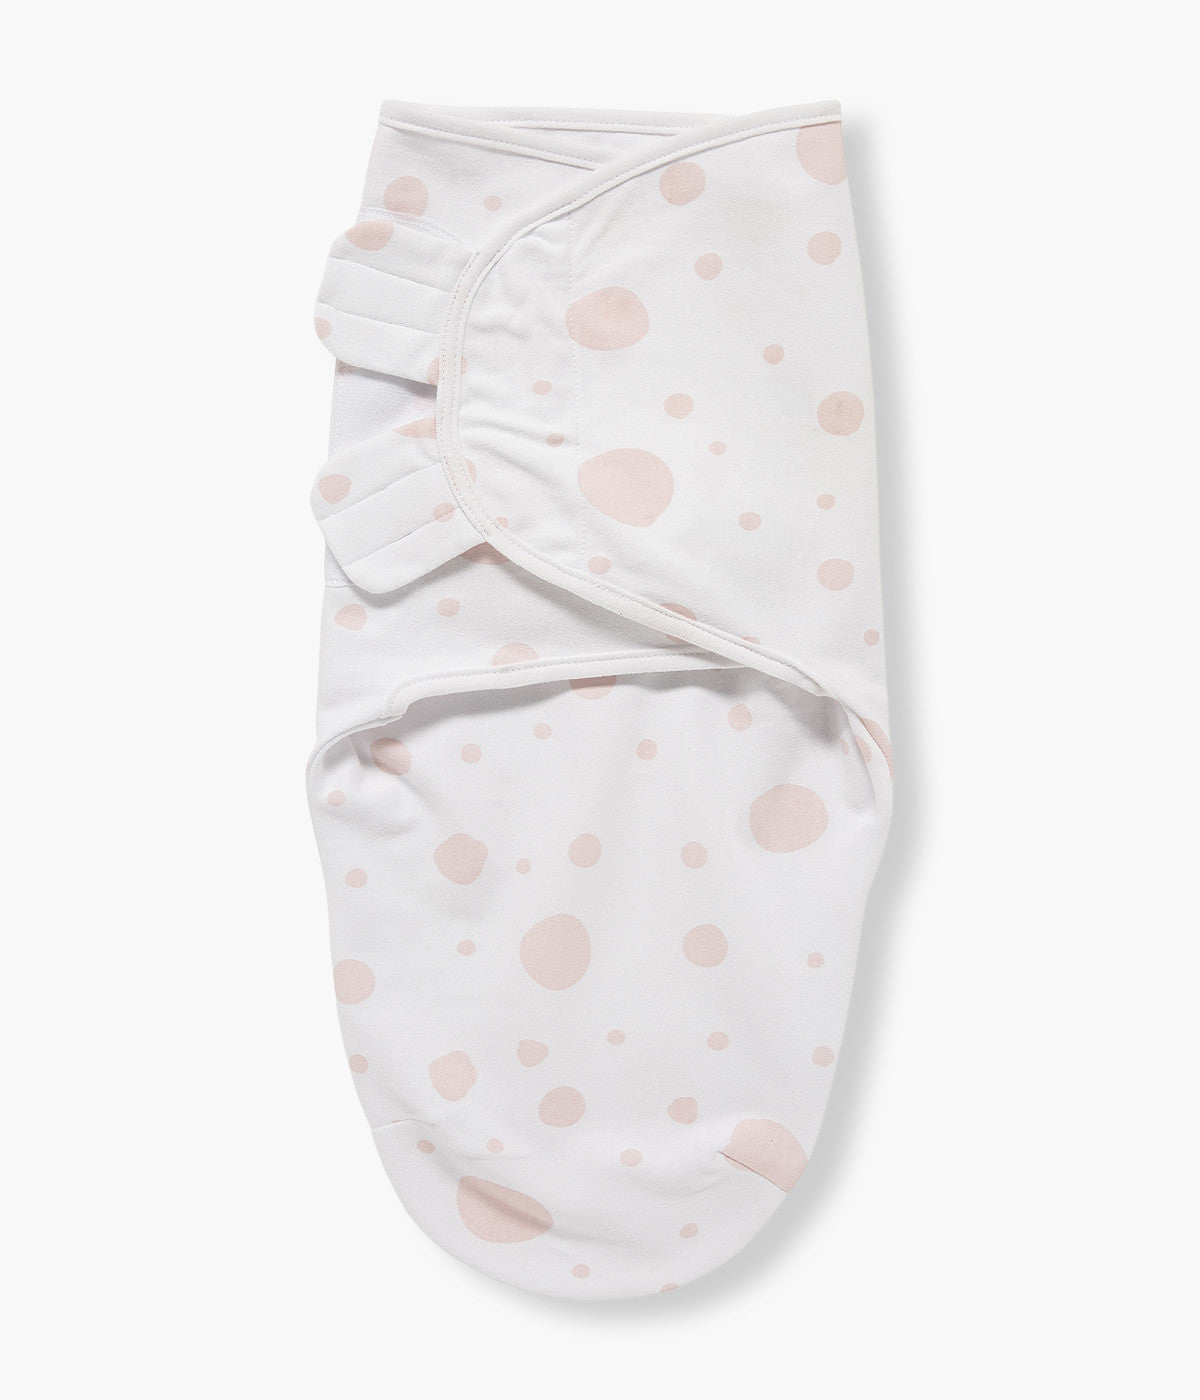 Swaddle Wrap com Velcro em Algodão Bolas Bebé Menina - Branca e Rosa